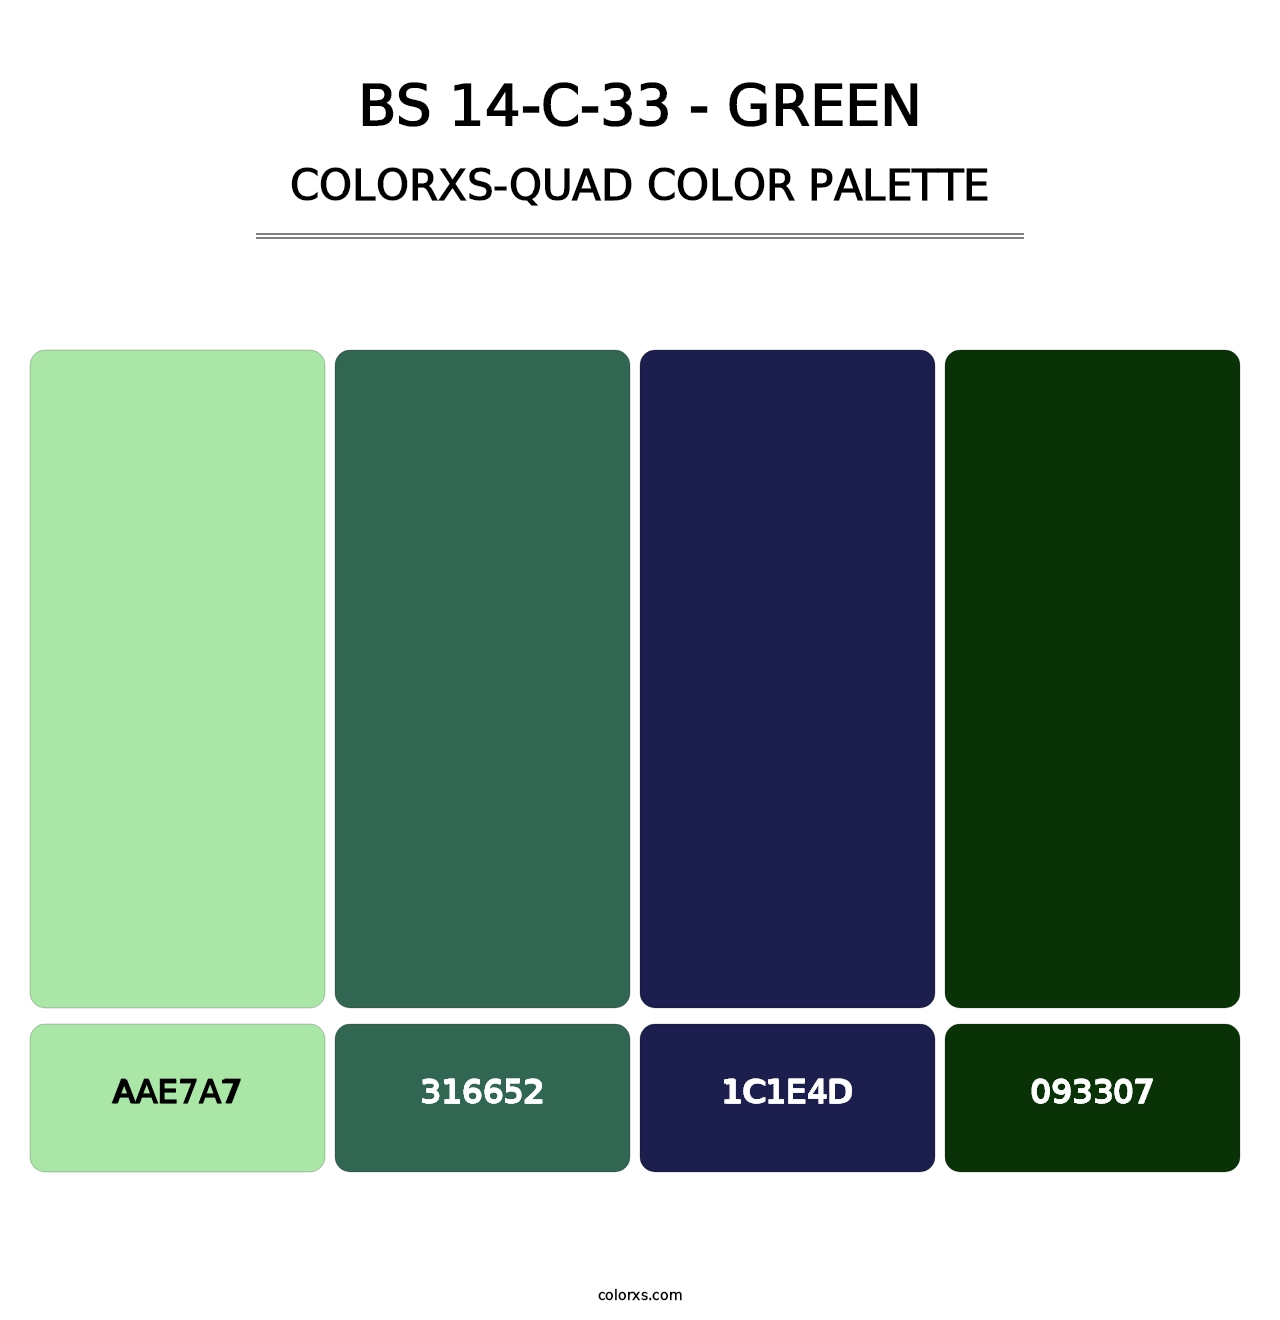 BS 14-C-33 - Green - Colorxs Quad Palette